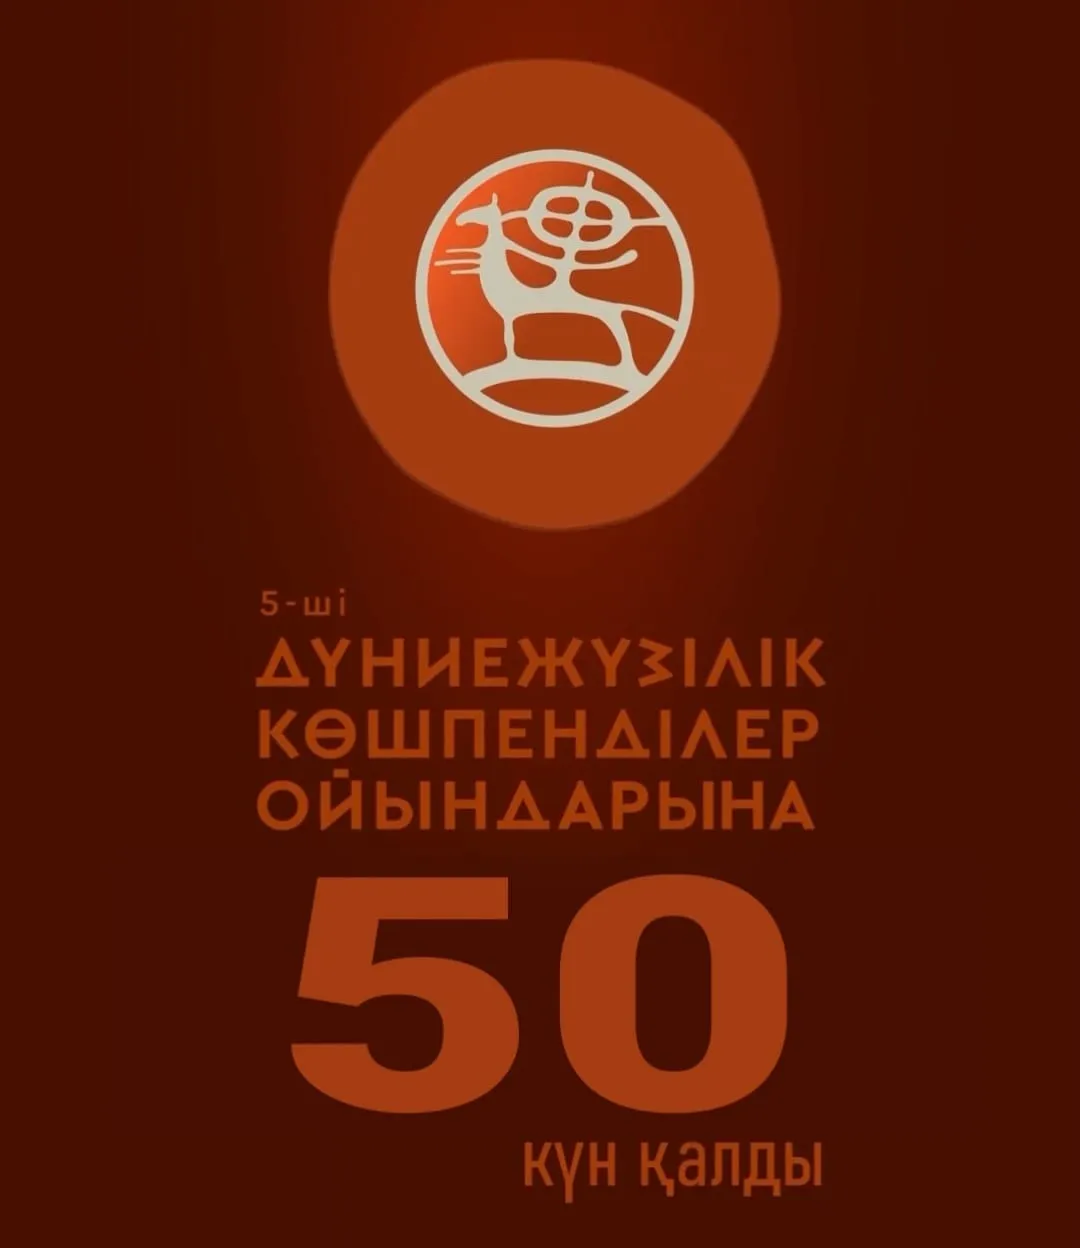 Осталось 50 дней до 5-х Всемирных игр кочевников!